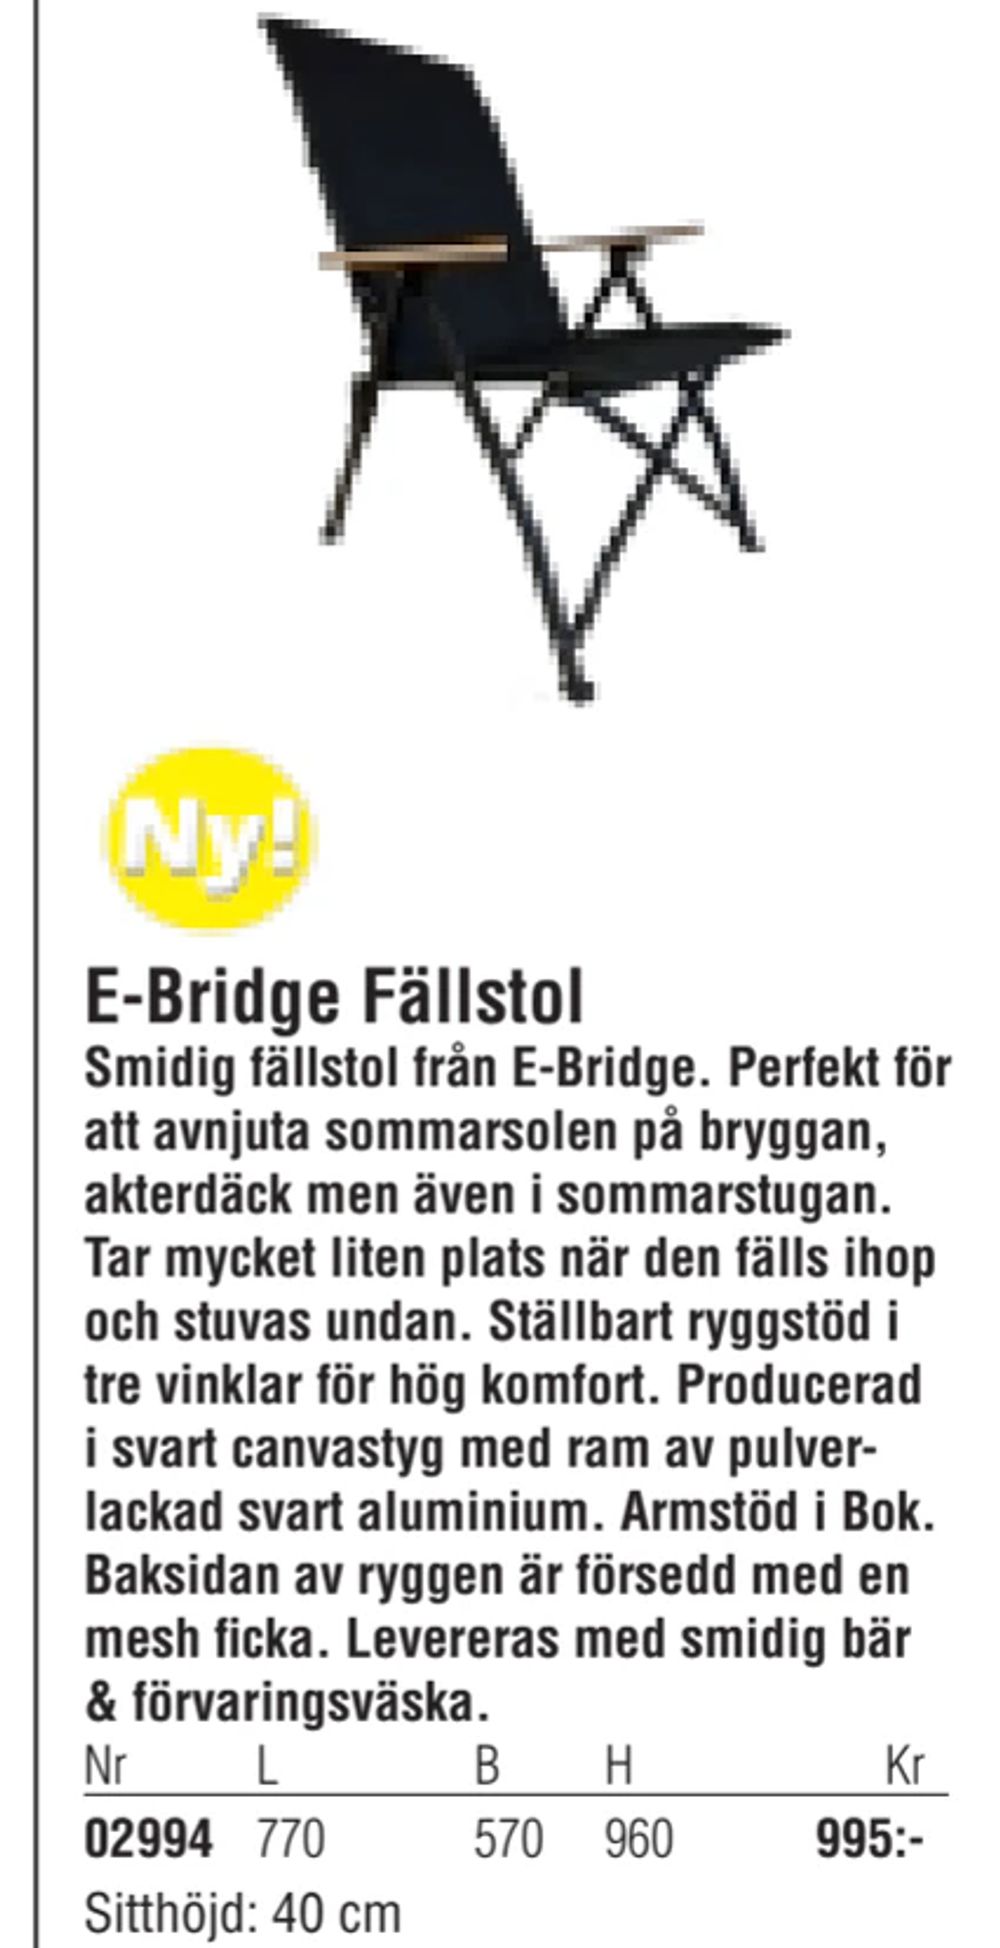 Erbjudanden på E-Bridge Fällstol från Erlandsons Brygga för 995 kr